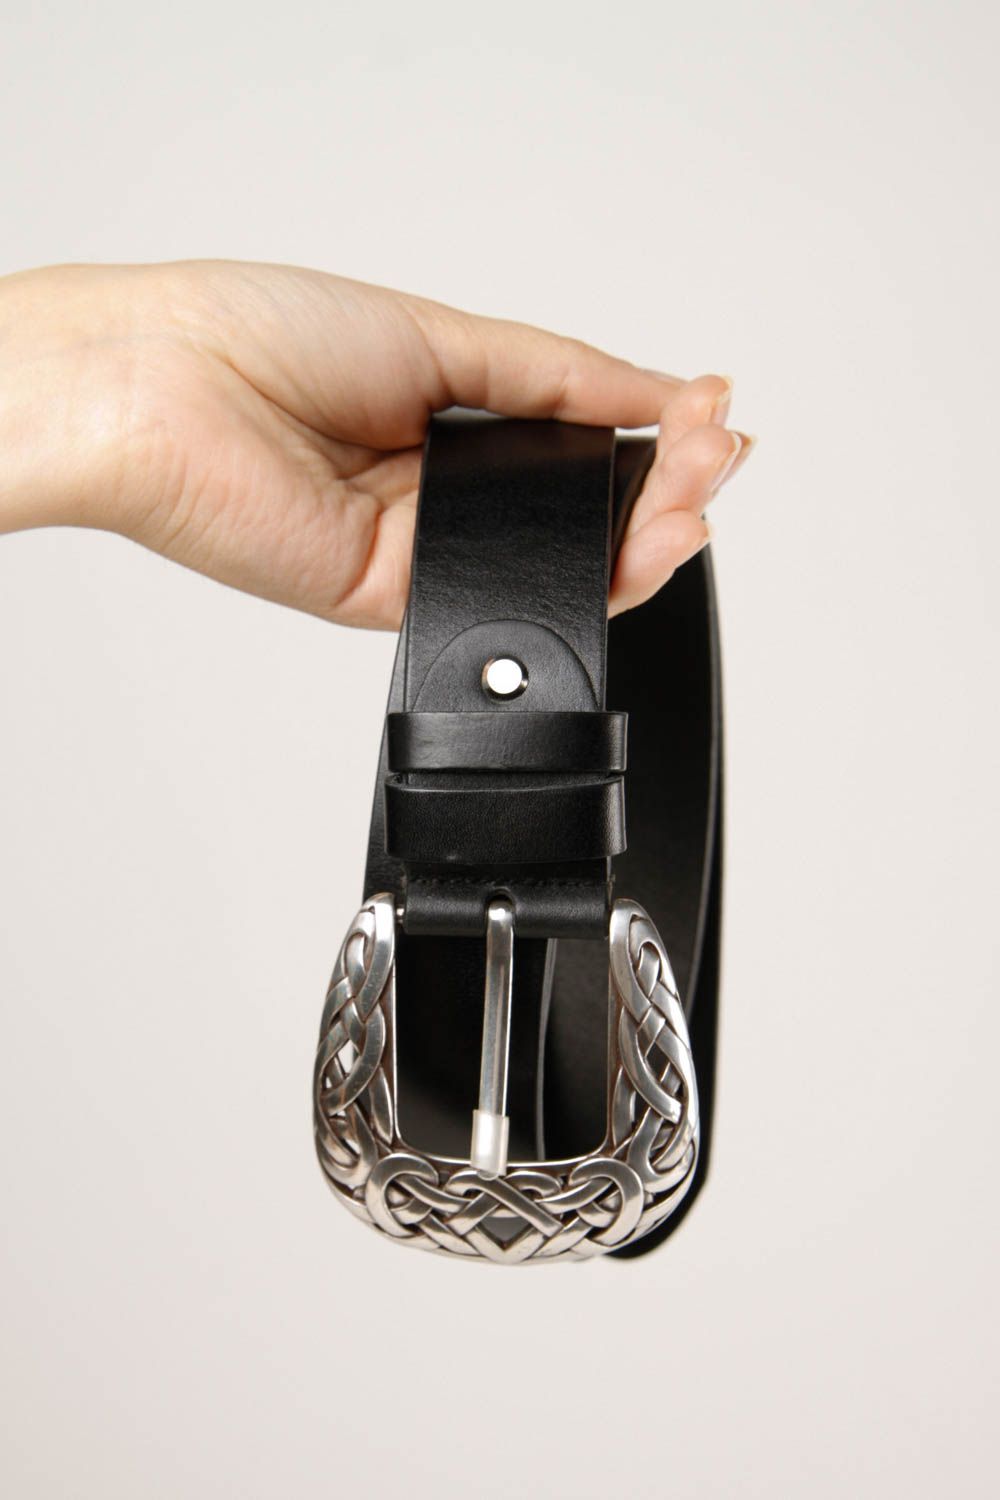 Handmade belt for men leather belt gift ideas unusual belt black belt for men photo 2